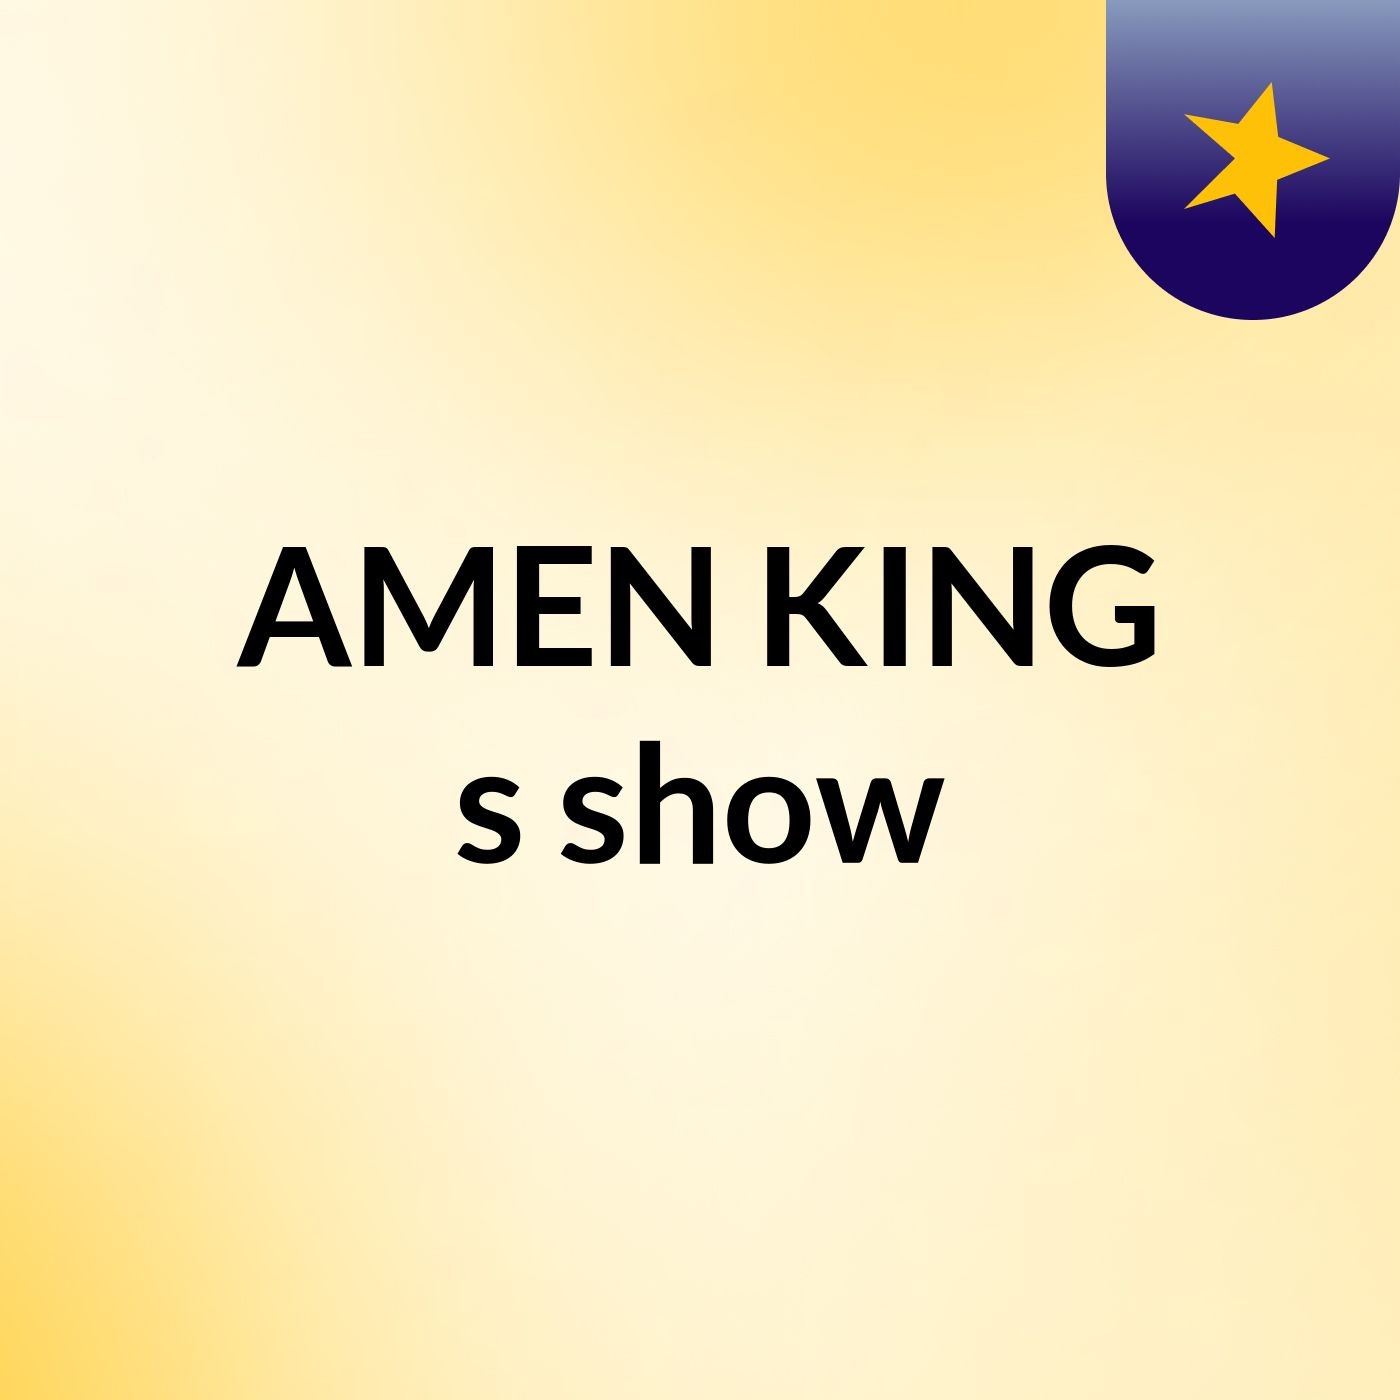 AMEN KING's show